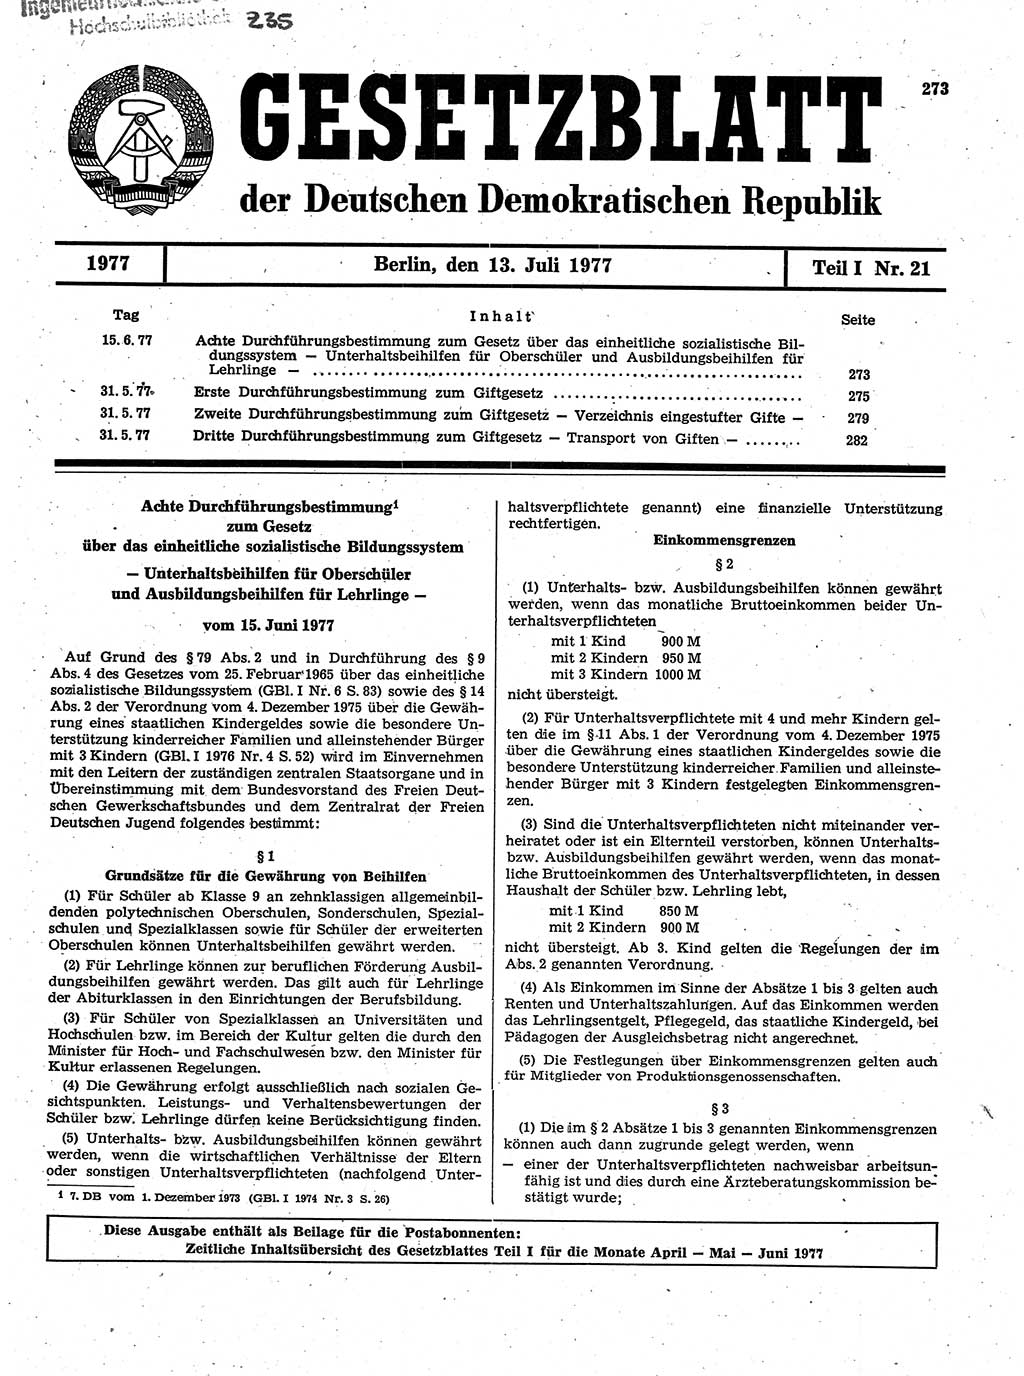 Gesetzblatt (GBl.) der Deutschen Demokratischen Republik (DDR) Teil Ⅰ 1977, Seite 273 (GBl. DDR Ⅰ 1977, S. 273)